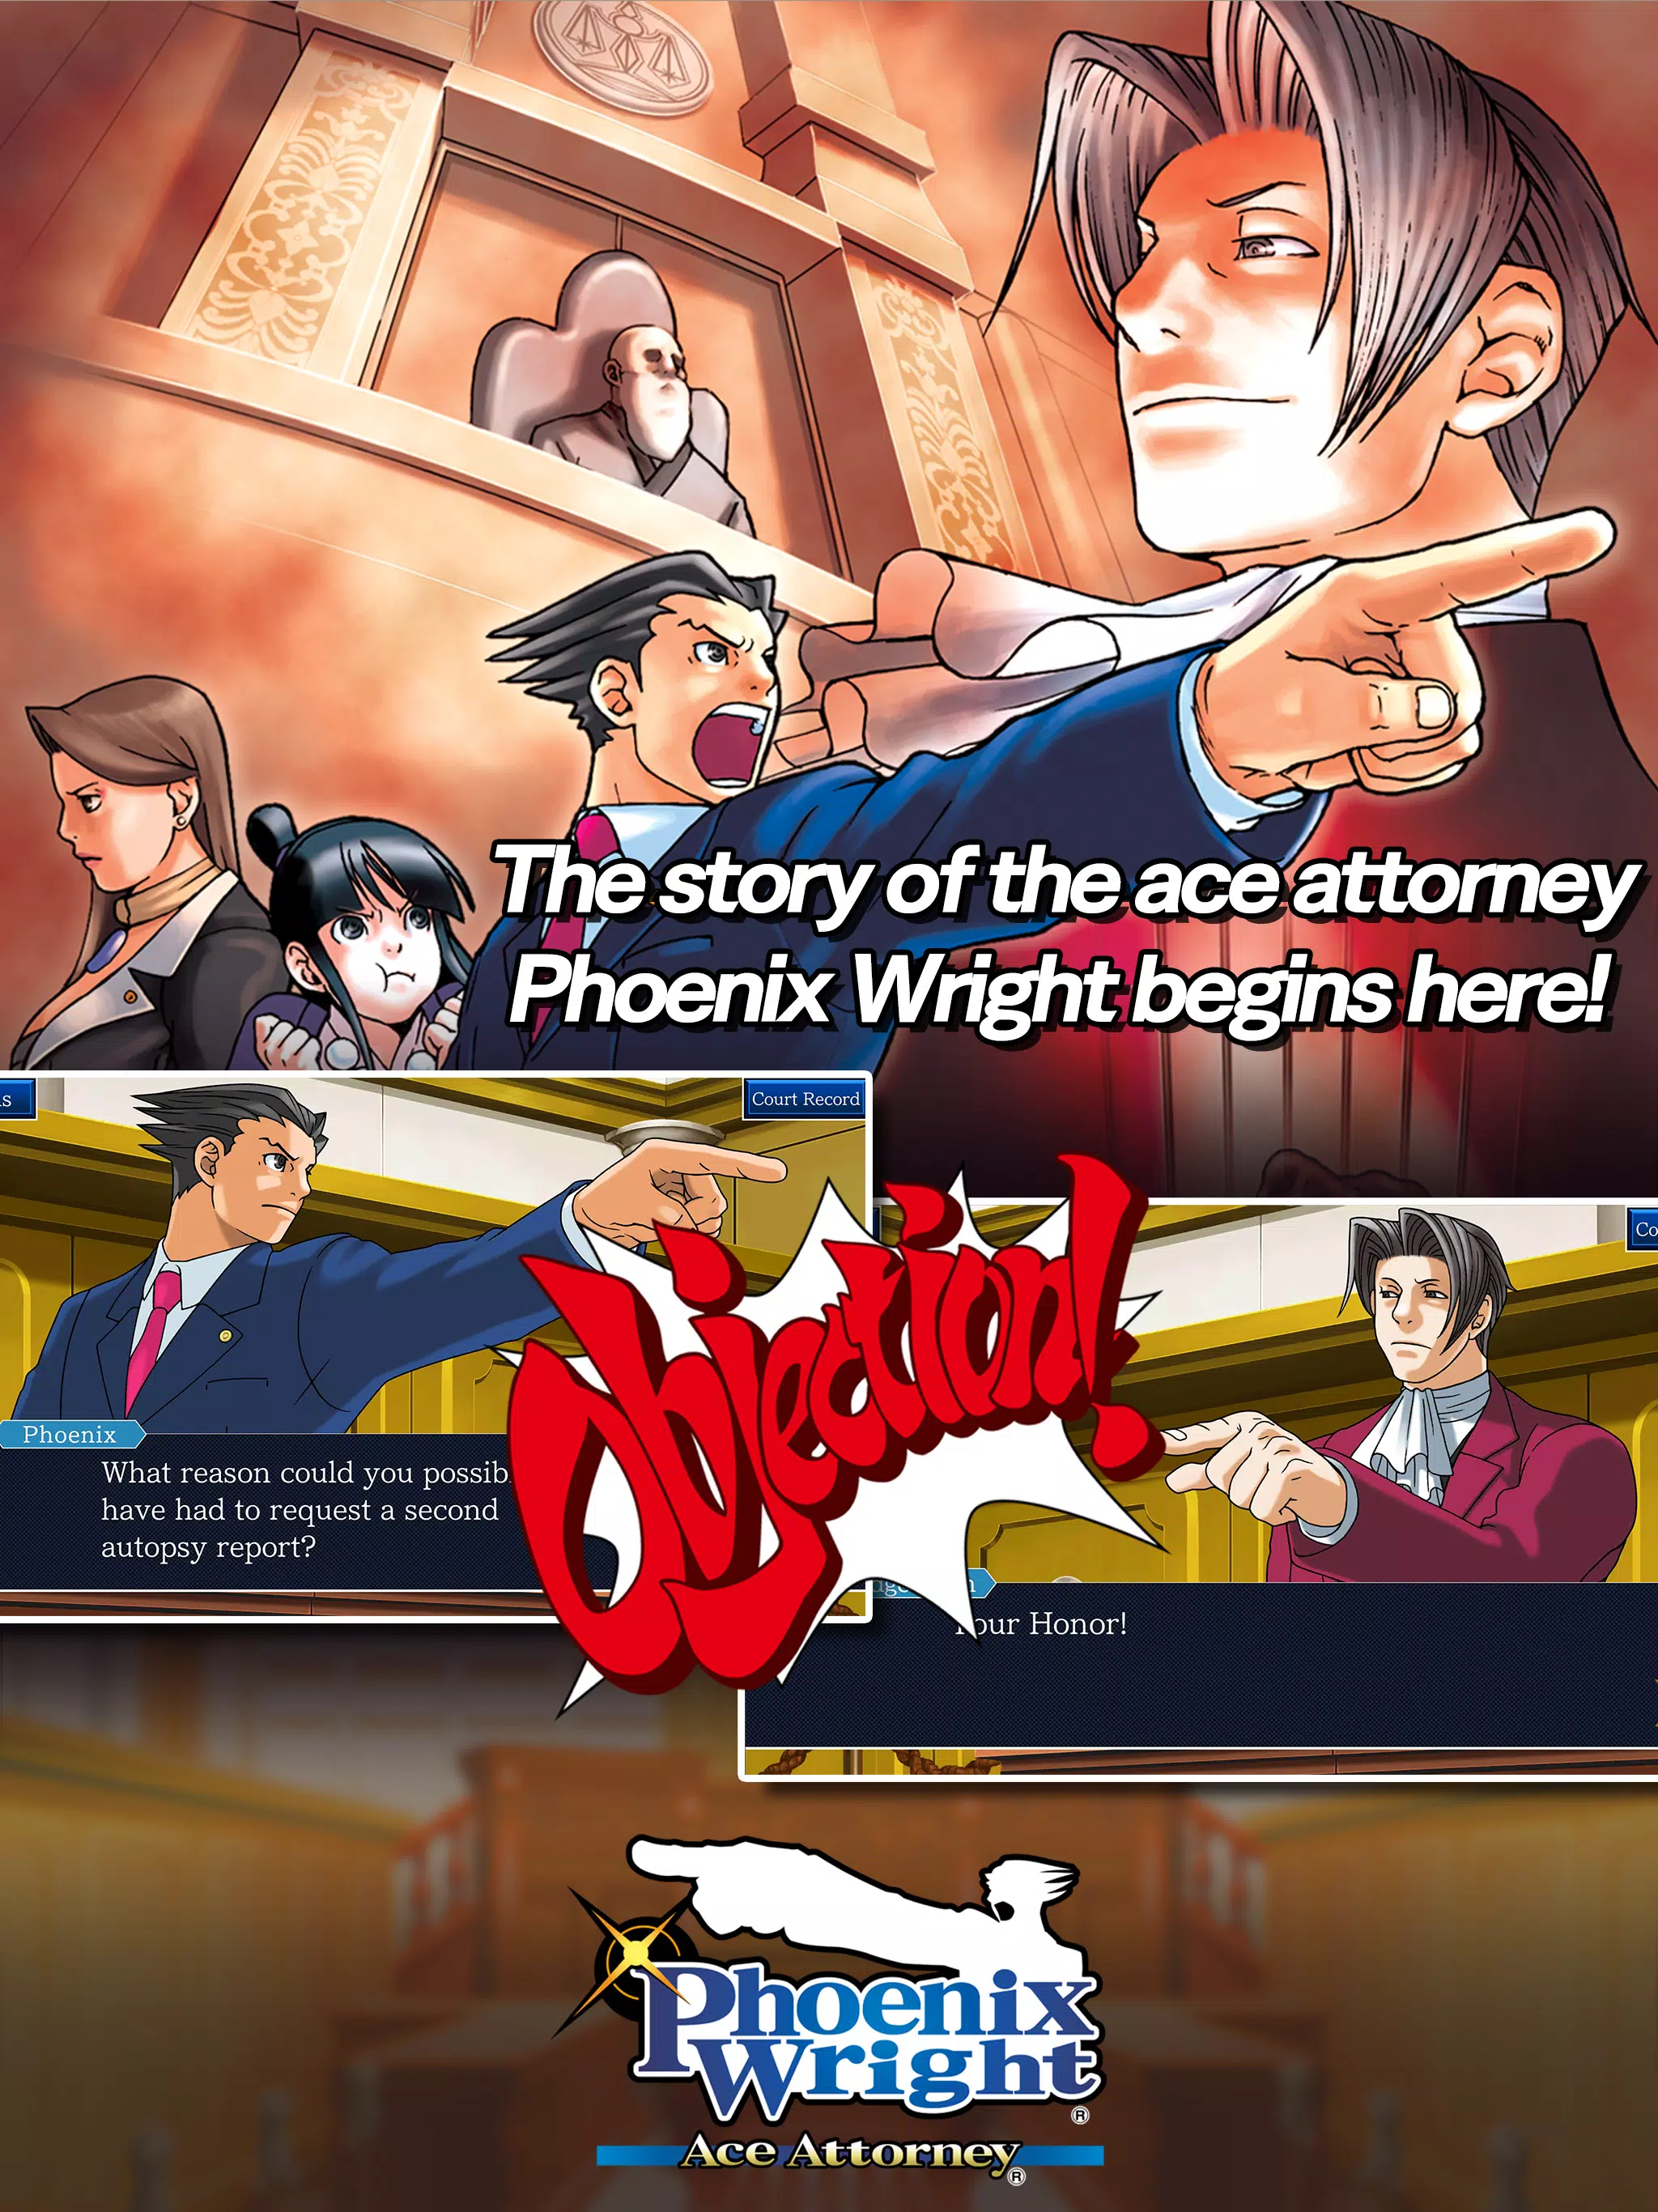 PC] Phoenix Wright: Ace Attorney Trilogy - Traduzido e Dublado v1.01  (Jacutem Sabão) - João13